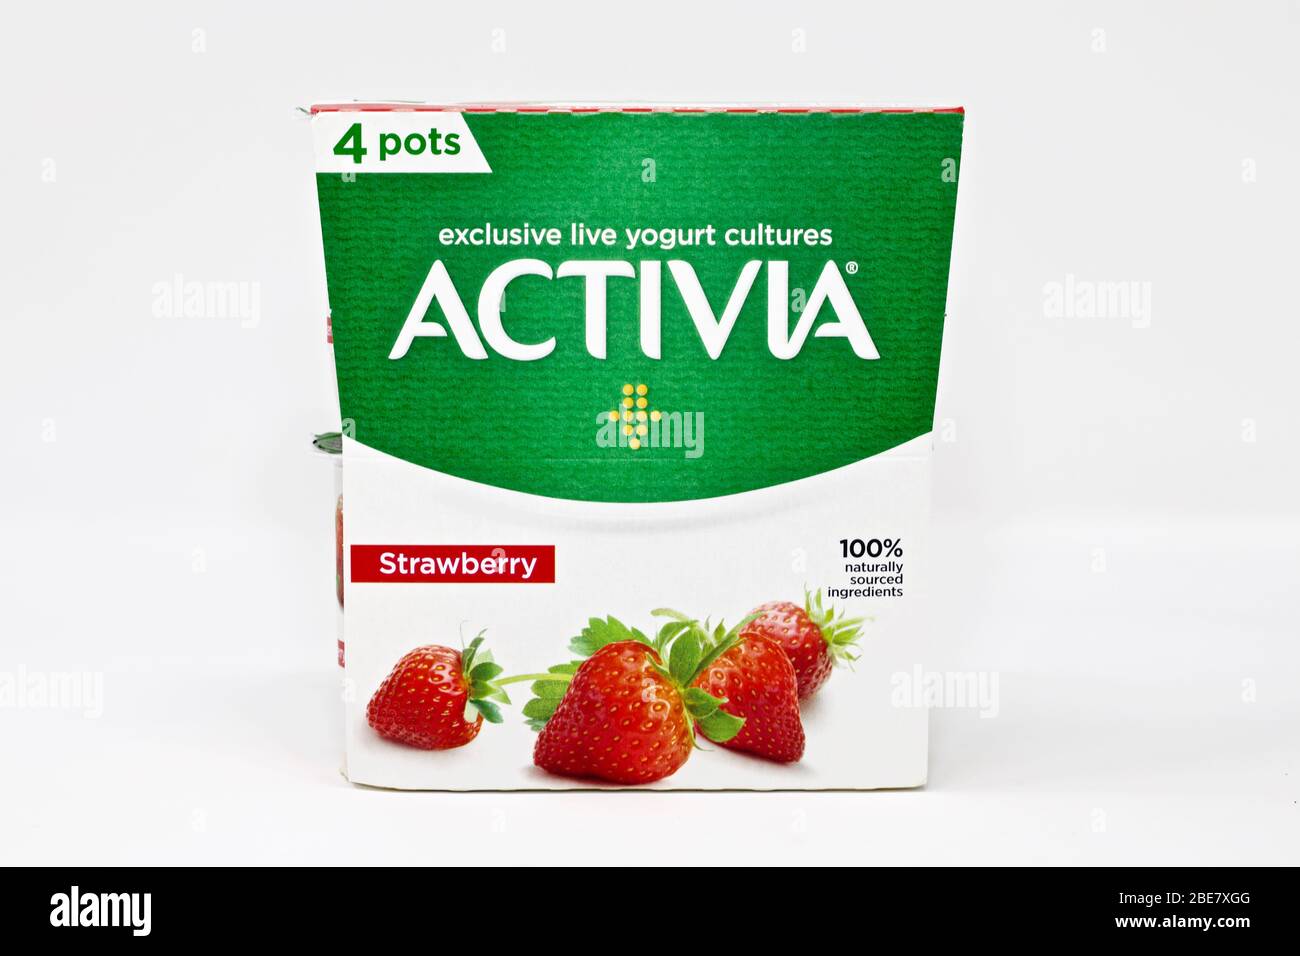 Yogurt - Danone Photo Stock Strawberry Alamy Activia